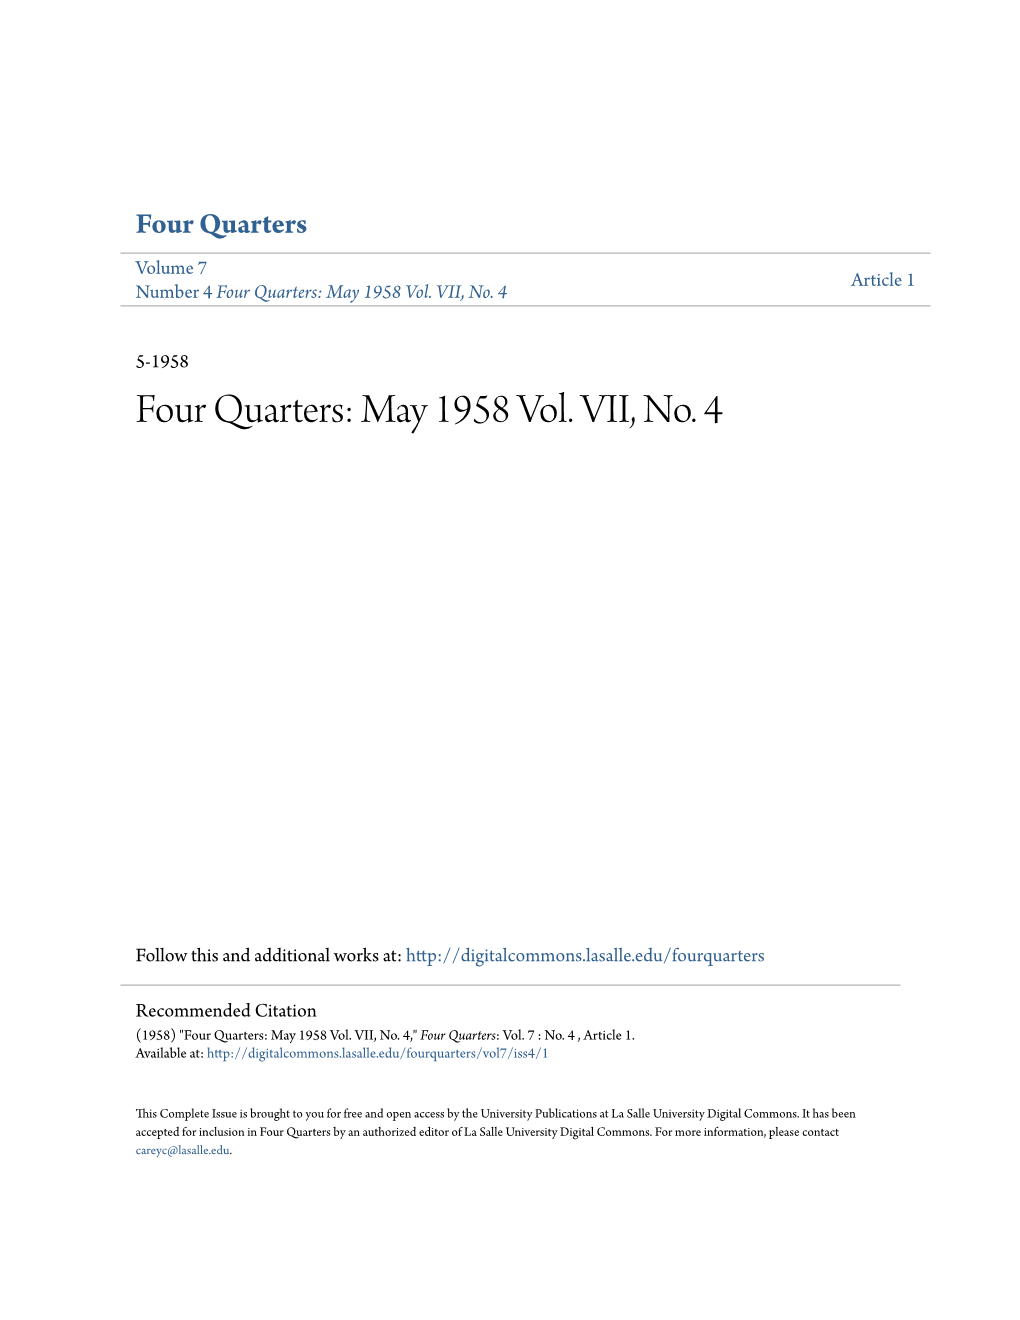 Four Quarters: May 1958 Vol. VII, No. 4